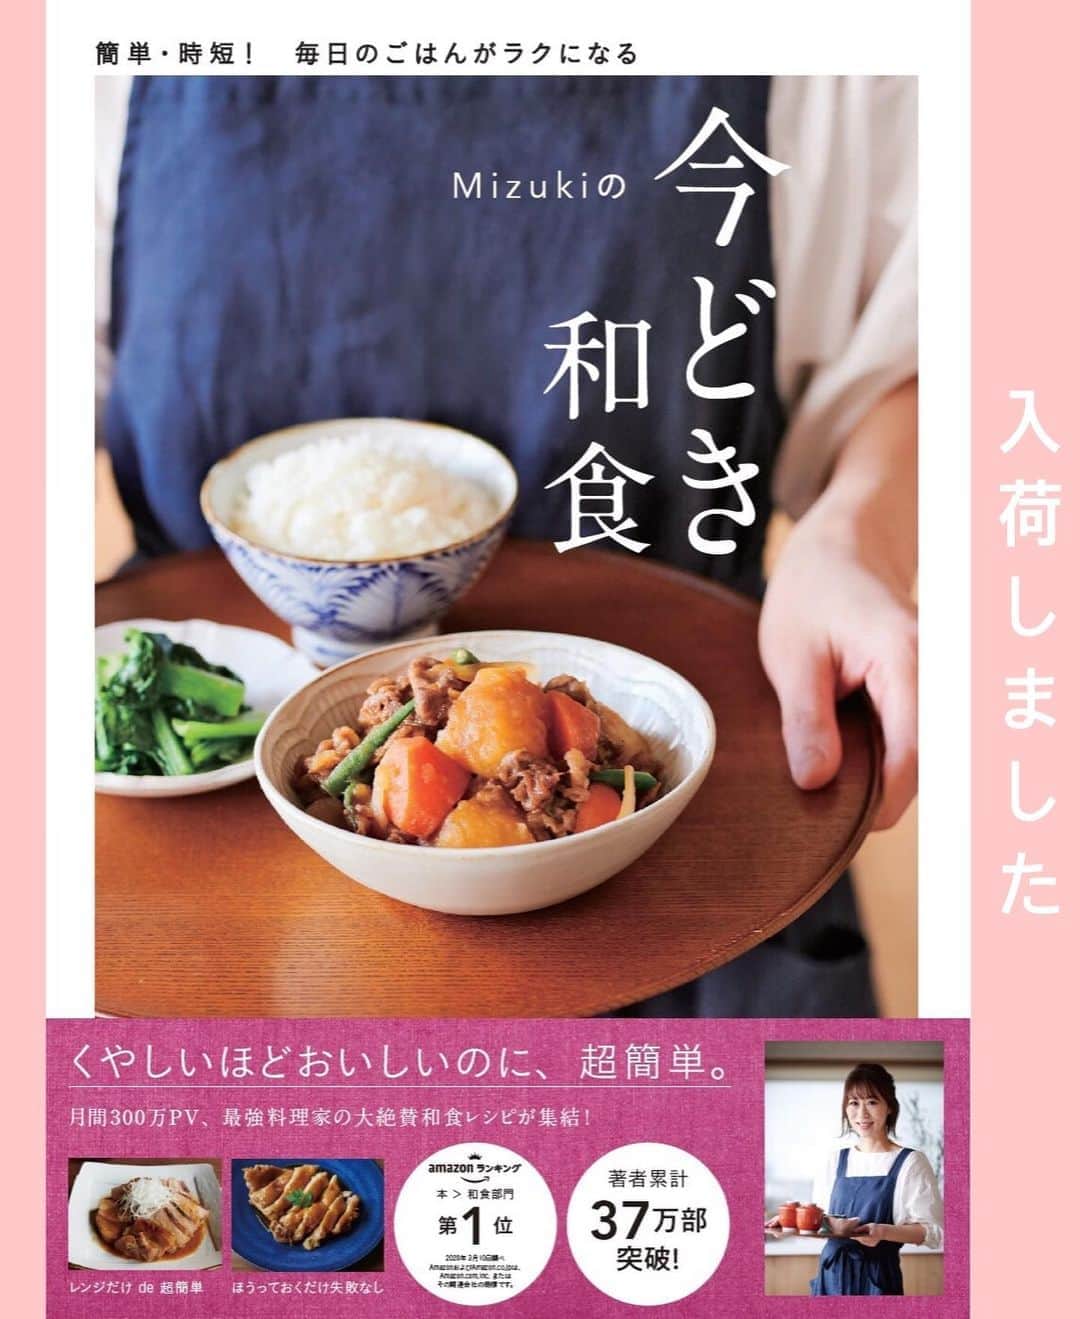 Mizuki【料理ブロガー・簡単レシピ】さんのインスタグラム写真 - (Mizuki【料理ブロガー・簡単レシピ】Instagram)「・﻿ 【レシピ】ーーーーーーーーーーー﻿ ♡鶏肉の中華風ほったらかし煮♡﻿ ーーーーーーーーーーーーーーーー﻿ ﻿ ﻿ ﻿  おはようございます(*^^*)﻿ ﻿ 今日ご紹介させていただくのは﻿ ［鶏肉の中華風ほったらかし煮］﻿ お鍋に調味料と鶏肉を入れたら﻿ ''いじらず触らず煮るだけ''の﻿ 超〜簡単レシピです(*´艸`)﻿ ﻿ ほったらかしで煮るだけなのに﻿ 味も照りも抜群に仕上がりますよ♡﻿ これとってもおすすめなので﻿ 是非お試し下さいね(*^^*)﻿ ﻿ ＊【#今どき和食 】P.24掲載﻿ 〈鶏肉のほったらかししょうゆ煮〉の﻿ アレンジレシピです♡IGTVに保存済☆﻿ ﻿ ﻿ ﻿ ーーーーーーーーーーーーーーーーーーーー﻿ 【2人分】﻿ 鶏もも肉...大1枚(300g)﻿ ●酒...80ml﻿ ●砂糖・醤油・オイスターソース...各大1﻿ ●生姜チューブ...3cm﻿ 白髪ねぎ・レタス...各適量﻿ ﻿ 1.小さめの鍋に●を入れ、鶏肉を皮目を下にして加えて中火にかける。煮立ったらフタをし、弱めの中火で12分煮る。火を止めてそのまま5分置く。﻿ 2.食べやすい大きさに切り、白髪ねぎ、レタスと器に盛り合わせる。﻿ ーーーーーーーーーーーーーーーーーーーー﻿ ﻿ ﻿ ﻿ 《ポイント》﻿ ♦︎小さめの鍋を使用して下さい♩(私は16cmの鍋を使用)﻿ ♦︎鶏肉を裏返したりする必要はありません♩﻿ ﻿ ﻿ ﻿ ﻿ ﻿ ﻿ ＿＿＿＿＿＿＿＿＿＿＿＿＿＿＿＿＿＿＿﻿ 📕6刷重版しました📕﻿ 簡単・時短！ 毎日のごはんがラクになる﻿ ✨🦋 【 #Mizukiの今どき和食 】🦋✨﻿ ＿＿＿＿＿＿＿＿＿＿＿＿＿＿＿＿＿＿＿﻿ なるべく少ない材料で﻿ 手間も時間も省きながら﻿ 簡単にできるおいしい和食レシピ♩﻿ 簡単に失敗なくマスターできる一冊で﻿ もっと気軽に、カジュアルに﻿ 和食を楽しんで下さいね(*^^*)﻿ ＿＿＿＿＿＿＿＿＿＿＿＿＿＿＿＿＿＿＿﻿ ﻿ ﻿ ﻿ ﻿ ＿＿＿＿＿＿＿＿＿＿＿＿＿＿＿＿＿﻿ 🎀6刷重版しました🎀﻿ 混ぜて焼くだけ。はじめてでも失敗しない！﻿ 【#ホットケーキミックスのお菓子 】﻿ ﻿ 一冊まるっとホケミスイーツ♩﻿ 普段のおやつから﻿ 特別な日にも使えるレシピを﻿ この一冊に詰め込みました(*^^*)﻿ ホットケーキミックスを使えば﻿ 簡単に本格的なお菓子が作れますよ♡﻿ ＿＿＿＿＿＿＿＿＿＿＿＿＿＿＿＿＿﻿ ﻿ ﻿ ﻿ ⭐️ストーリー、ハイライト、プロフ画面に﻿ 本のURLを貼らせていただいております♩﻿ →(@mizuki_31cafe )﻿ ﻿ ﻿ ﻿ ﻿ ﻿ #鶏肉#ほったらかし煮#照り煮#作り置き#お弁当#Mizuki#簡単レシピ#時短レシピ#節約レシピ#料理#レシピ#フーディーテーブル#マカロニメイト#おうちごはん#デリスタグラマー#料理好きな人と繋がりたい#おうちごはんlover#写真好きな人と繋がりたい#foodpic#cooking#recipe#lin_stagrammer#foodporn#yummy#鶏肉の中華風ほったらかし煮m」8月8日 8時52分 - mizuki_31cafe